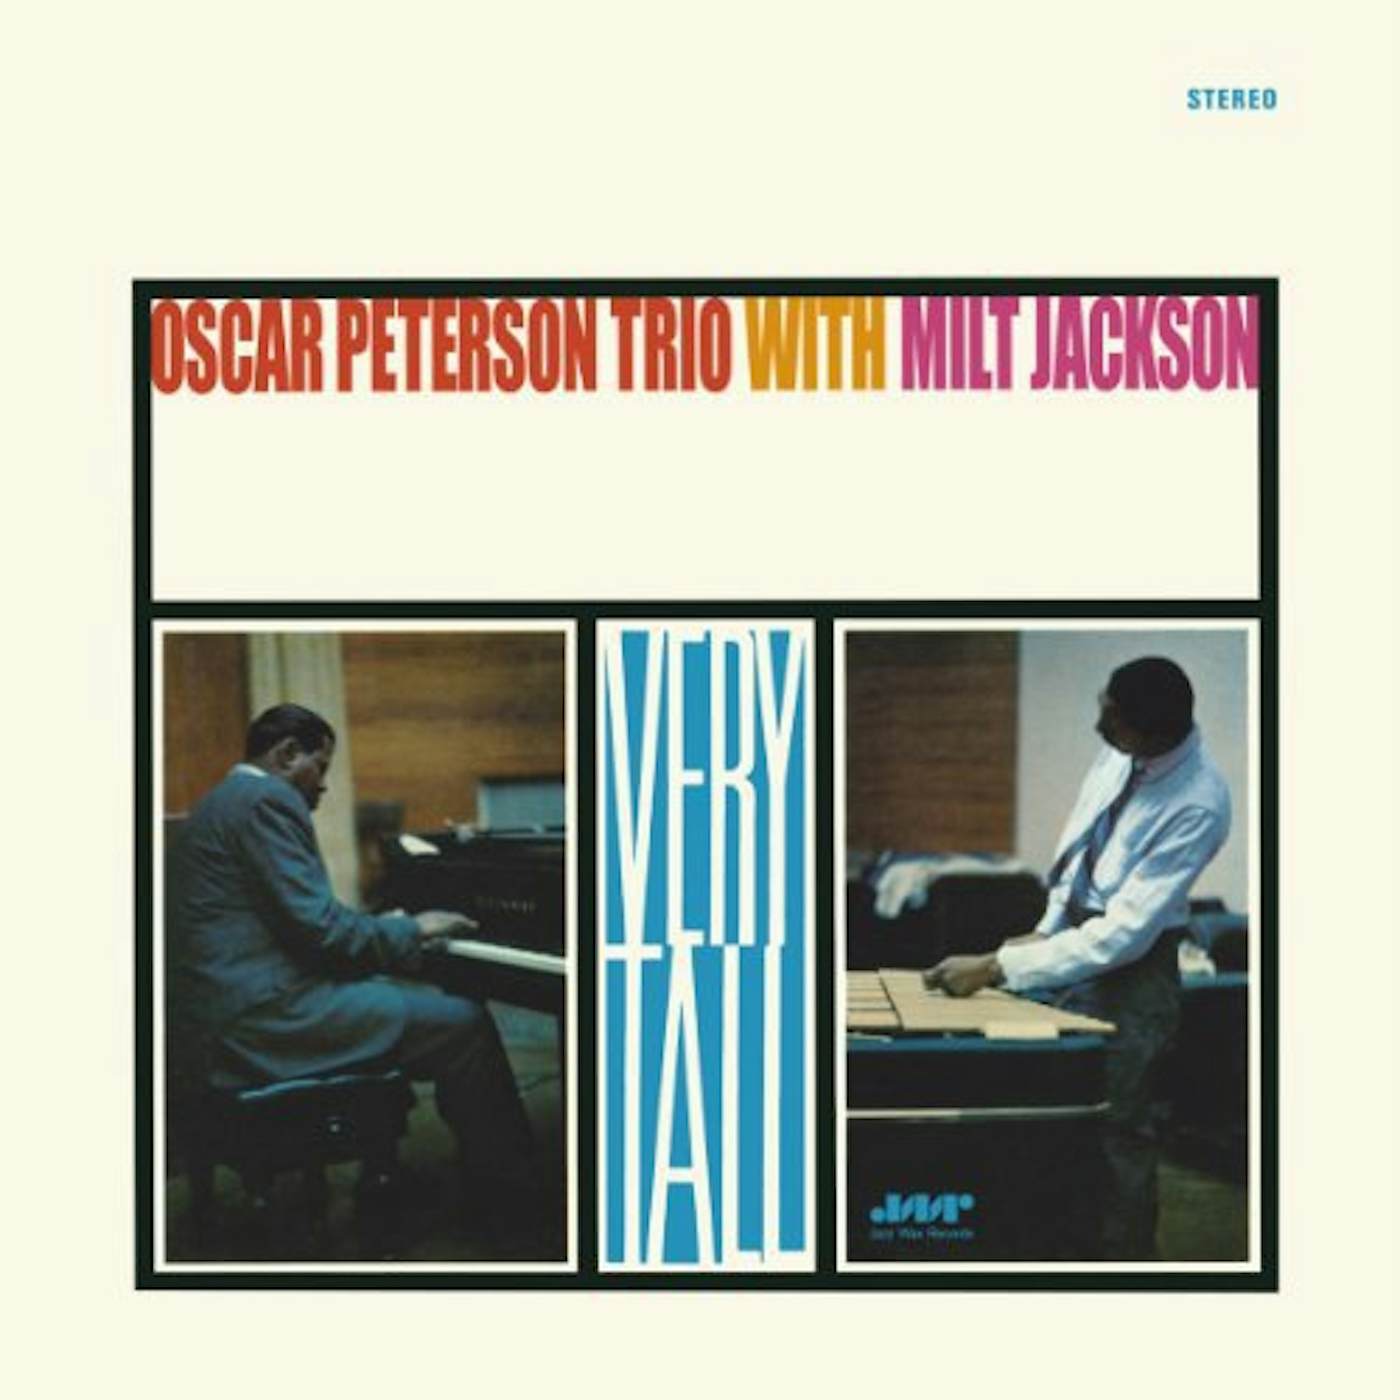 Oscar Peterson & Milt Jackson Very Tall Vinyl Record